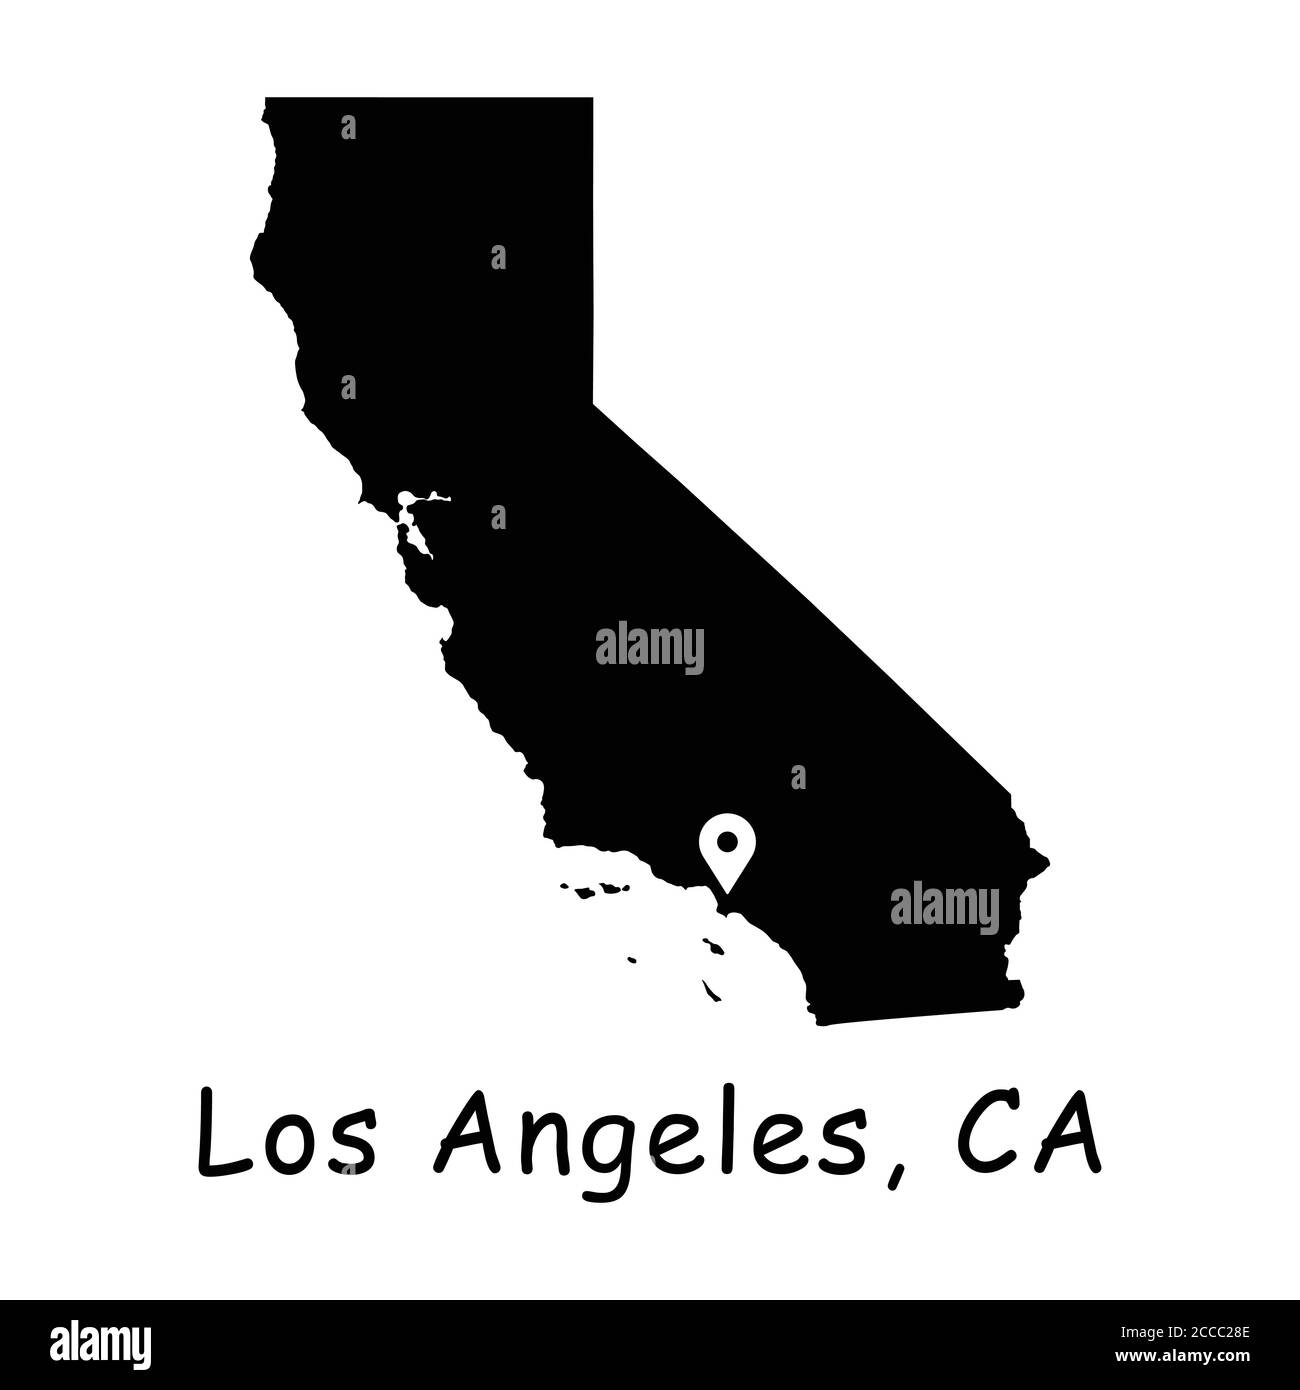 Los Angeles sur la carte de l'État de Californie. Carte détaillée de l'État de Californie avec broche d'emplacement sur la ville de LOS ANGELES. Carte de vecteur de silhouette noire L.A. isolée sur fond blanc Illustration de Vecteur